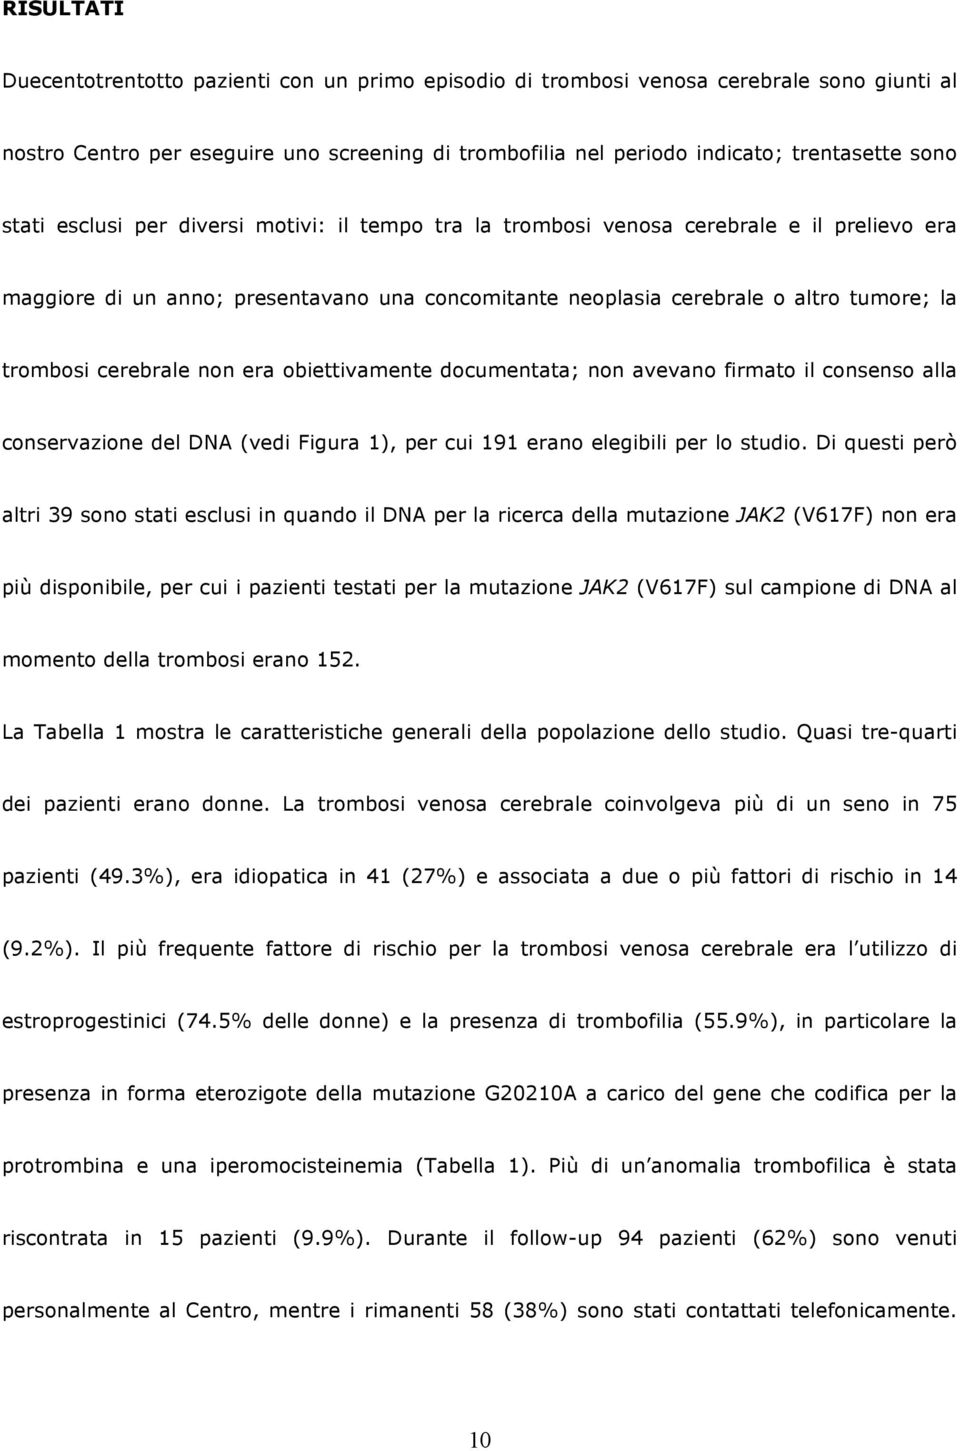 cerebrale non era obiettivamente documentata; non avevano firmato il consenso alla conservazione del DNA (vedi Figura 1), per cui 191 erano elegibili per lo studio.